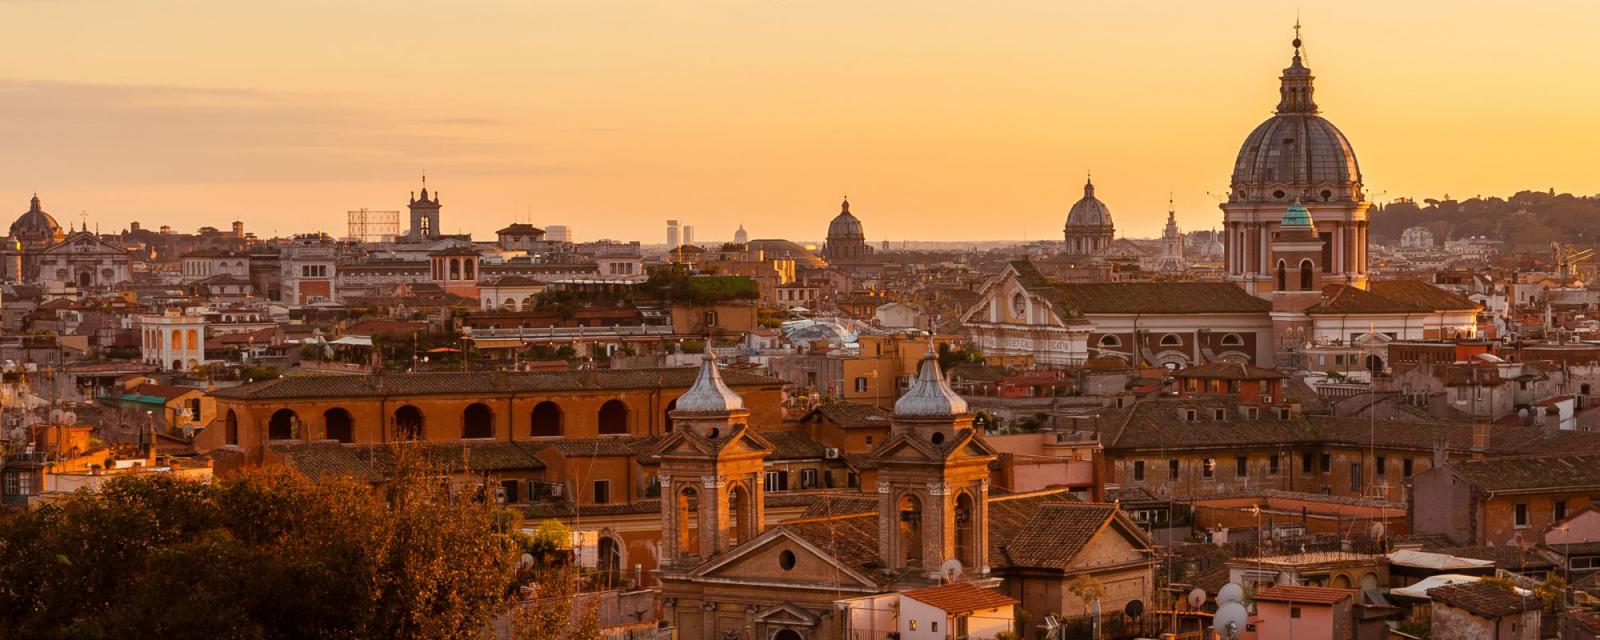 Dit zijn de mooiste plekken om een foto te maken in Rome 